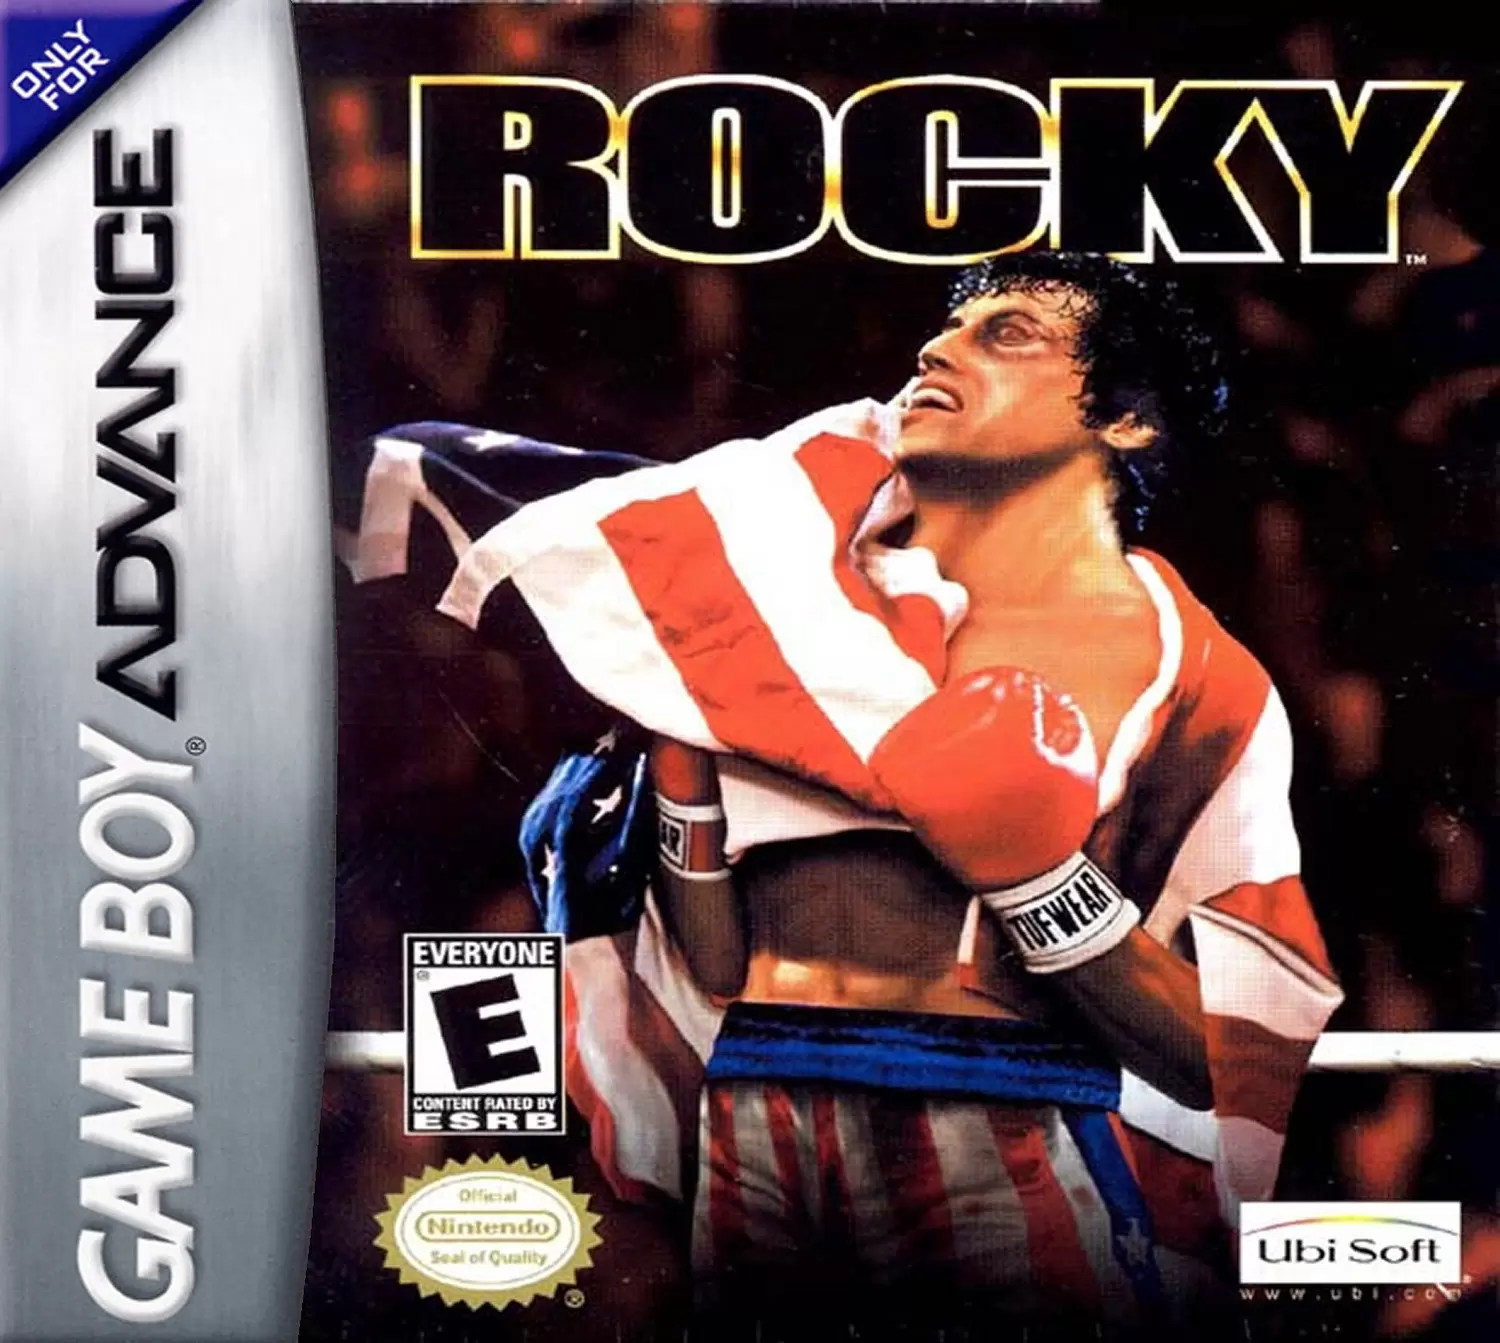 Game Boy Advance Games - Rocky